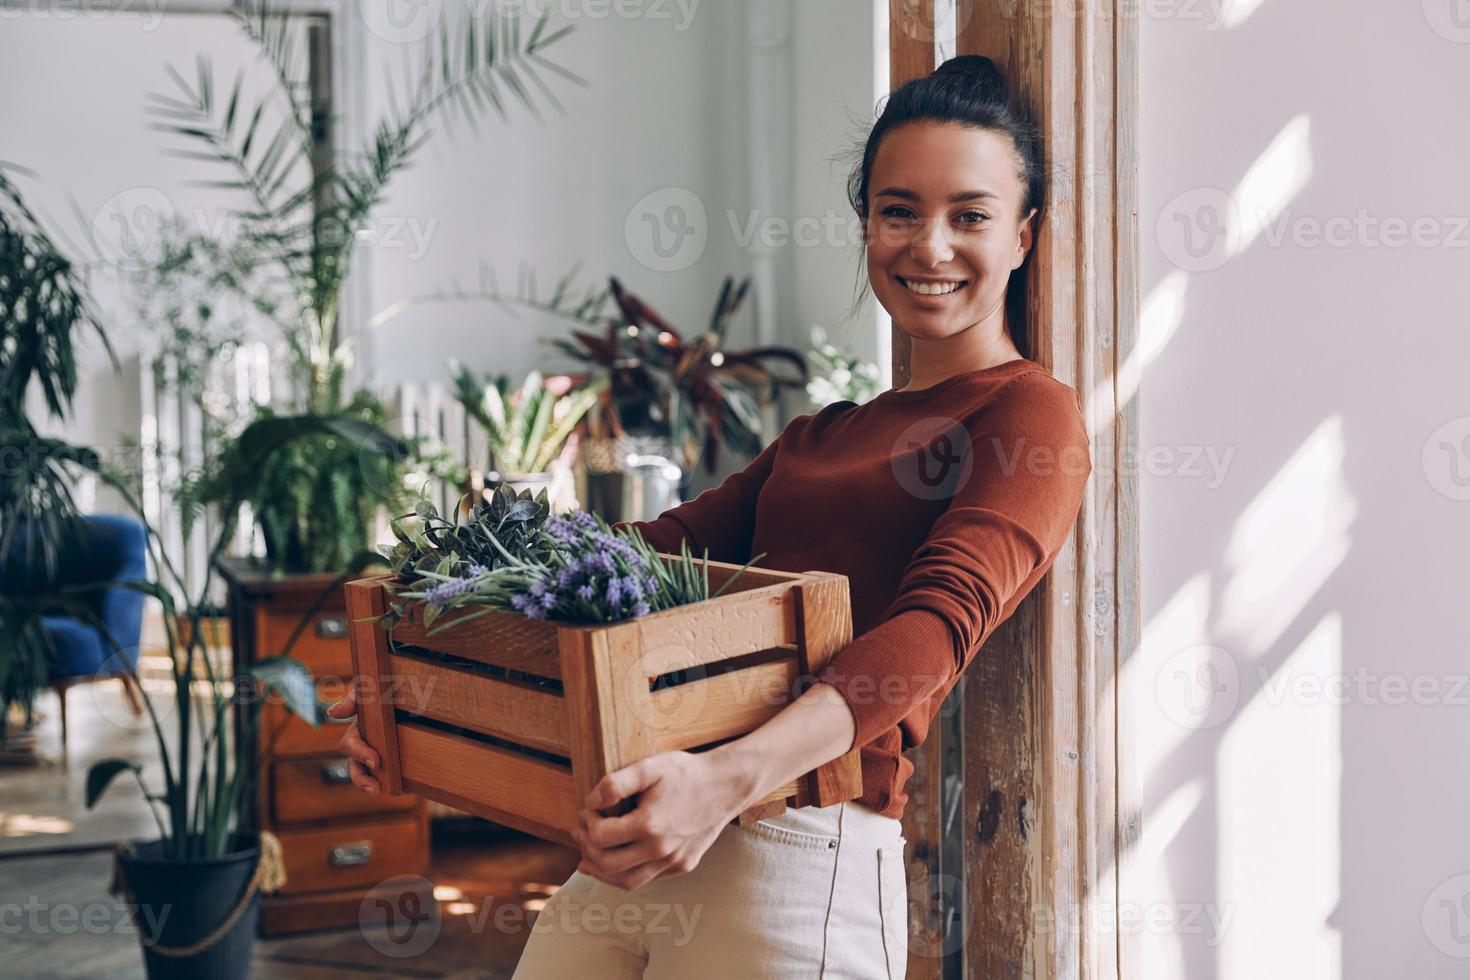 una joven alegre que lleva una caja de madera con plantas mientras se apoya en la puerta de casa foto